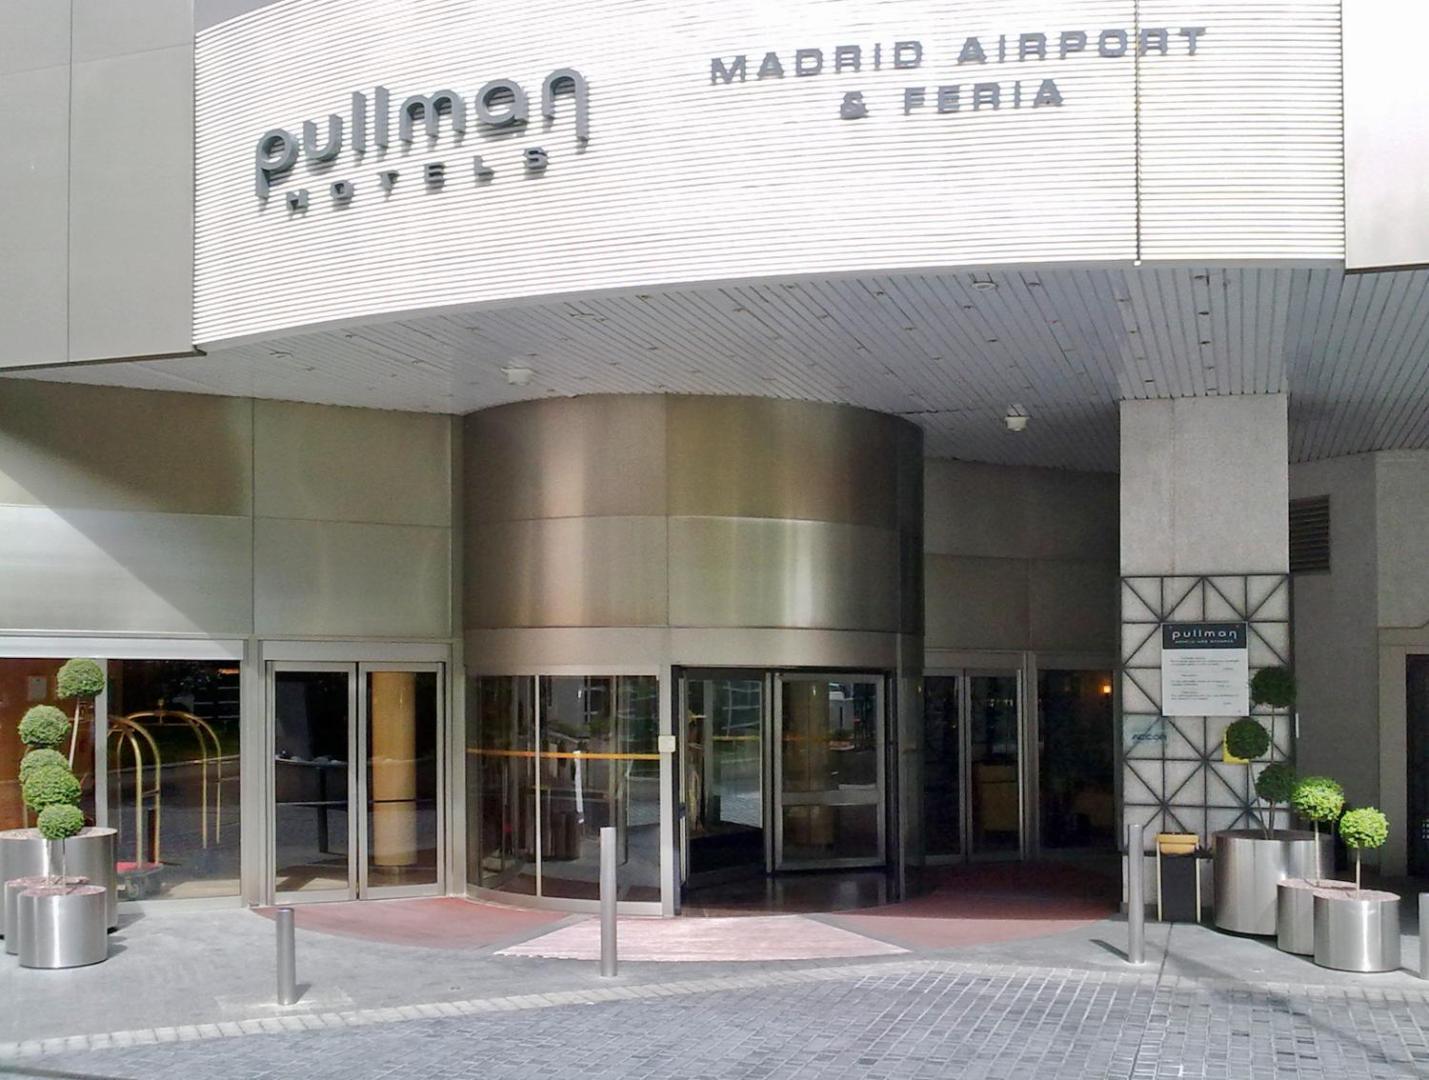 Pullman Madrid Airport & Feria